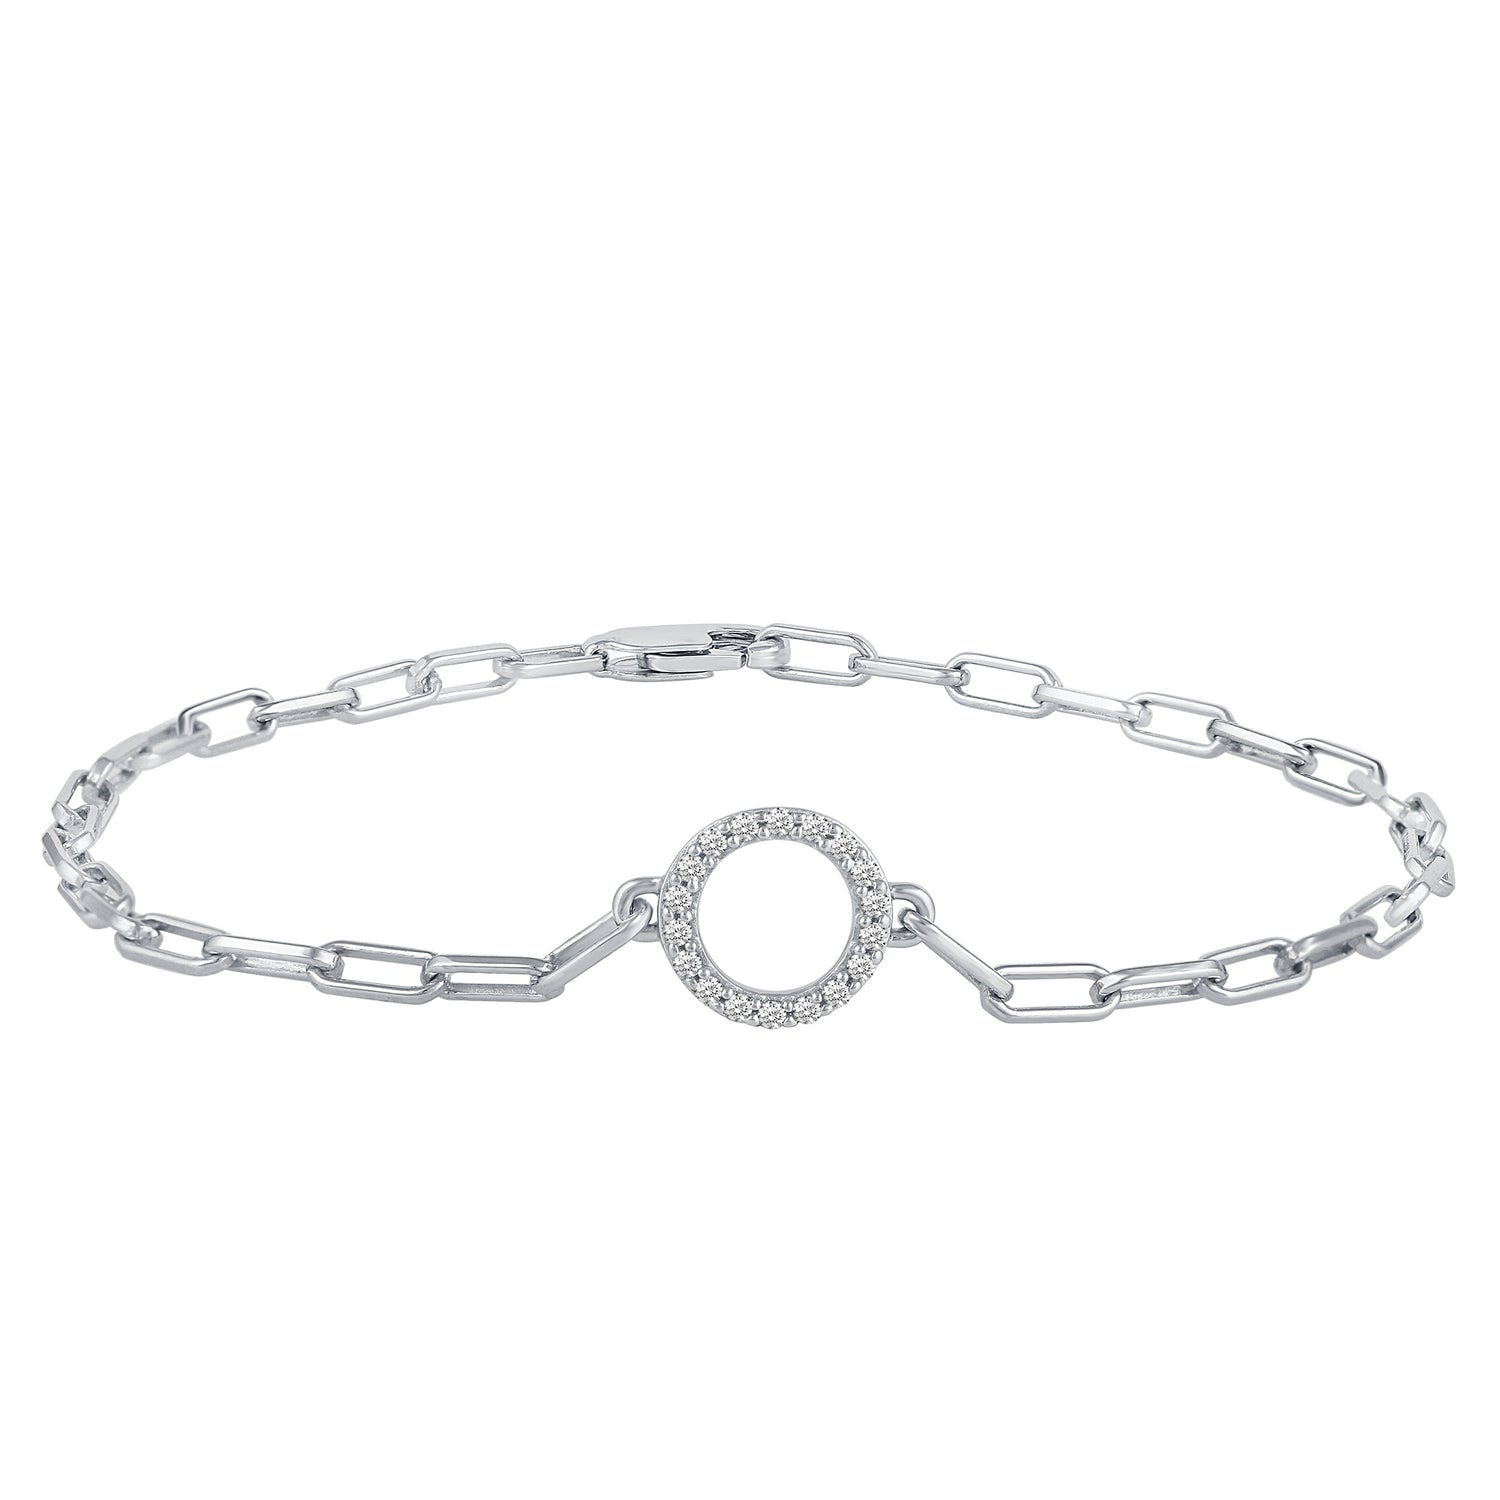 Louis Vuitton Collier Monogram Silver Tone Chain Necklace 22